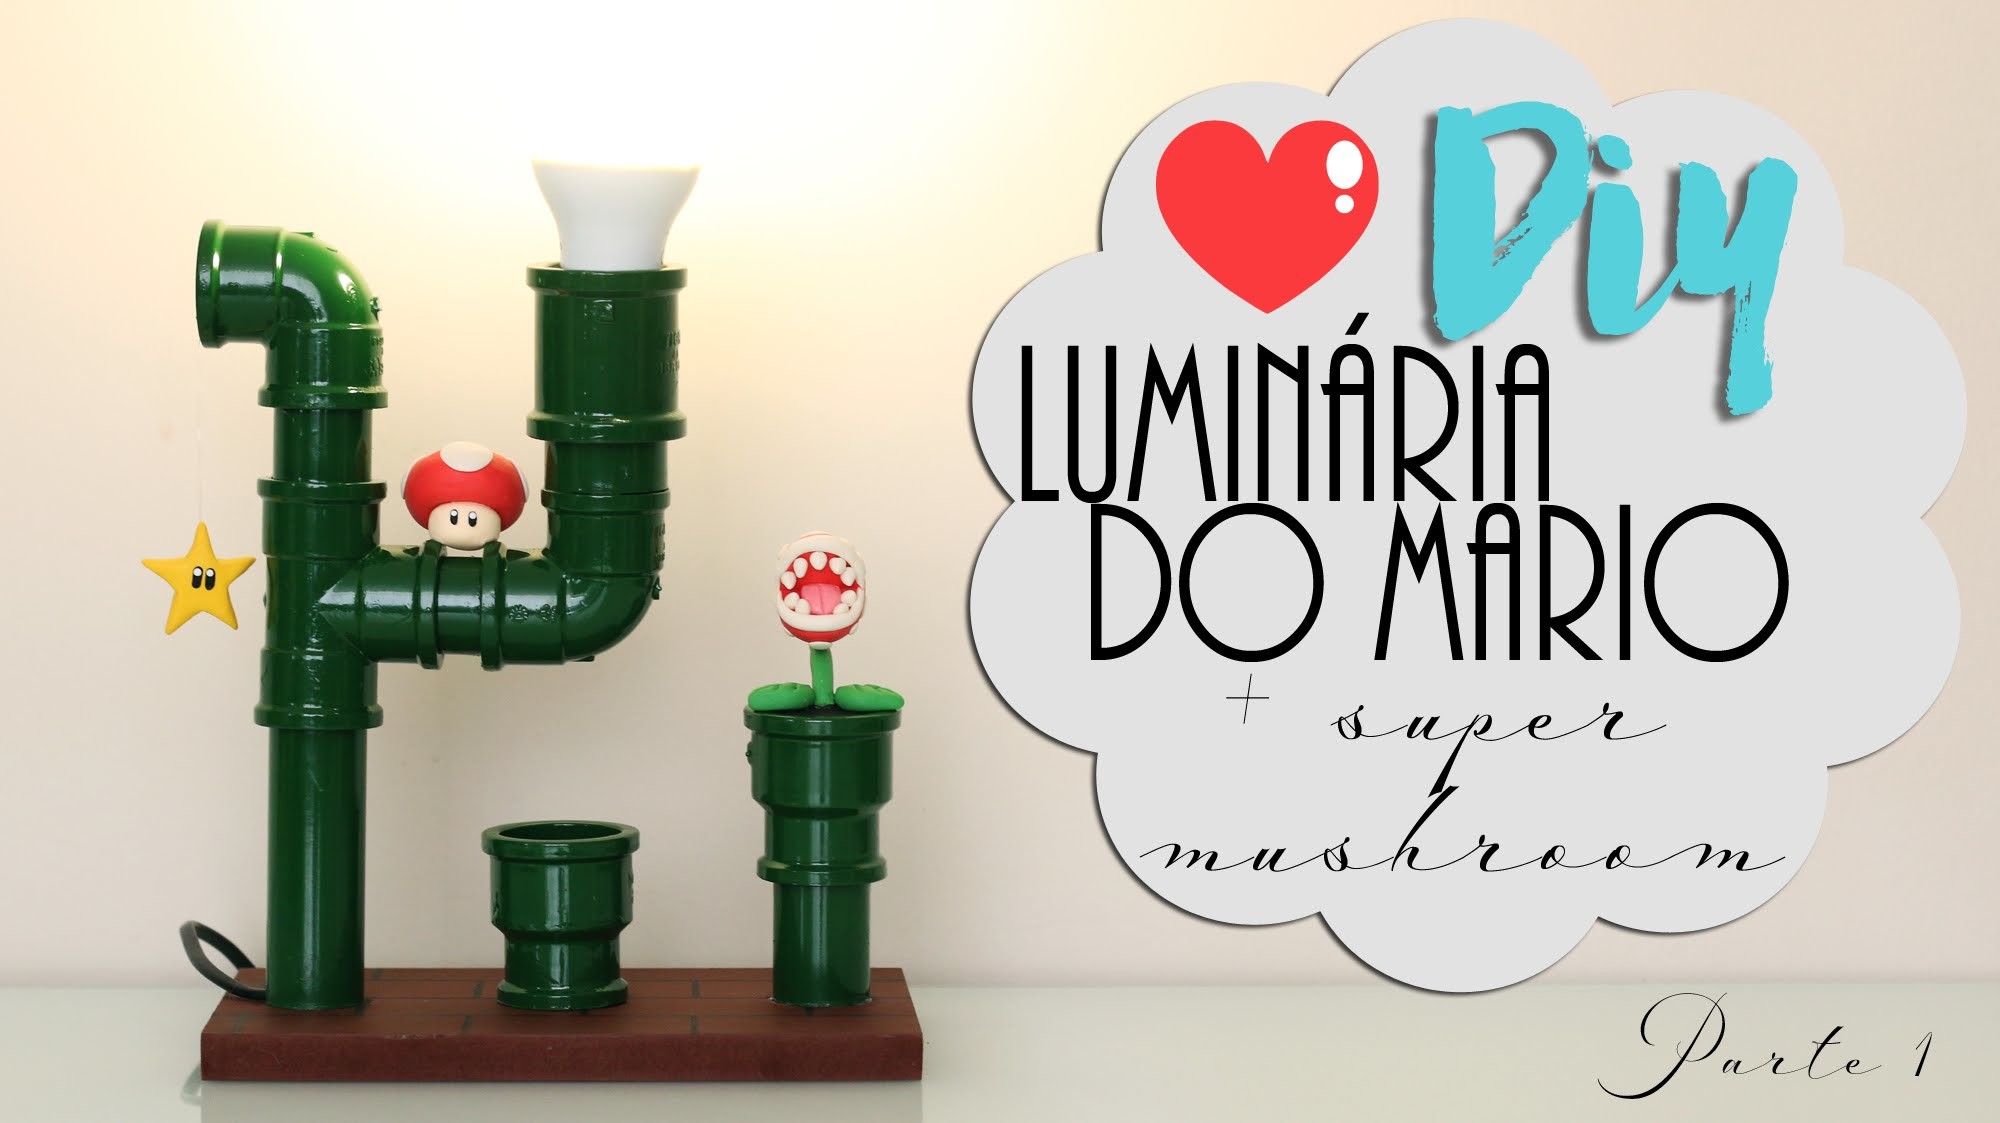 DIY: Luminária do Mário + Super Mushroom - Parte 1